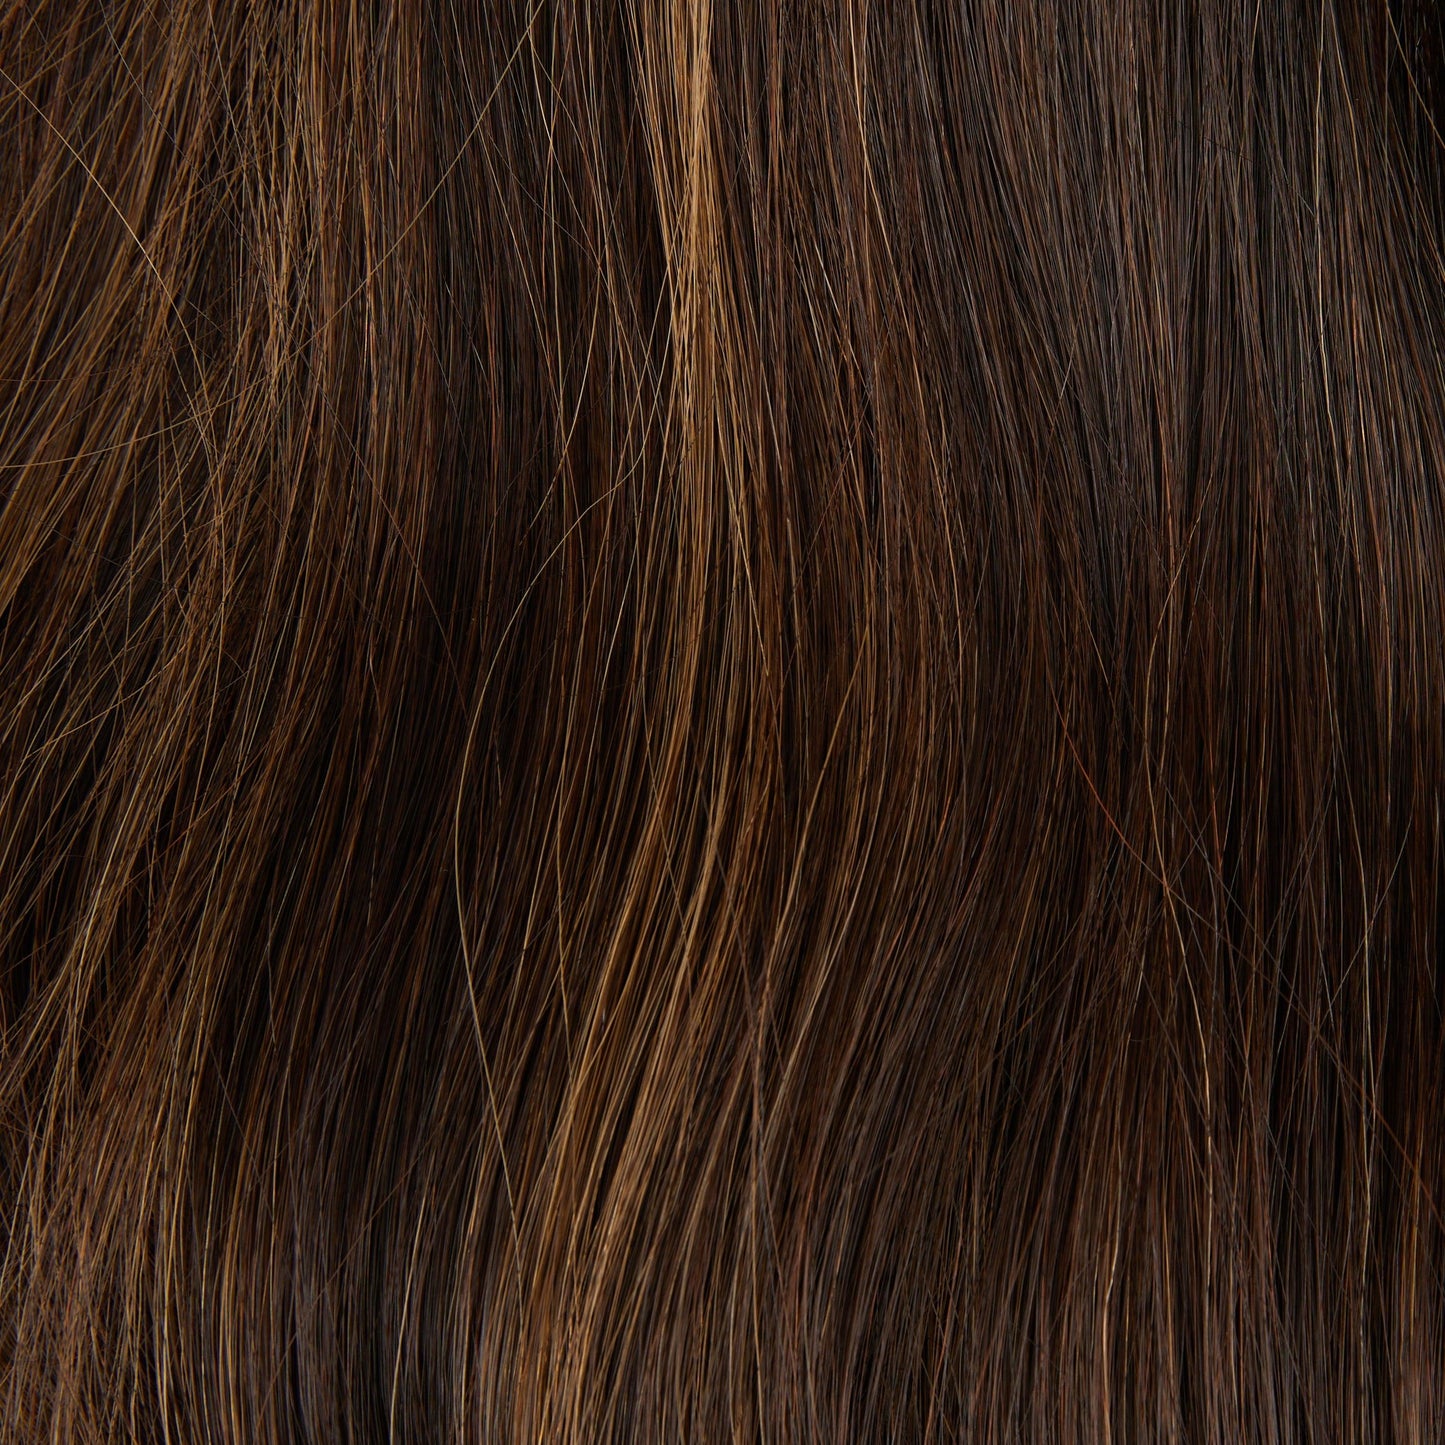 #2-12 - Dark Brown W- Blond Highlights CVP - Fortune Wigs